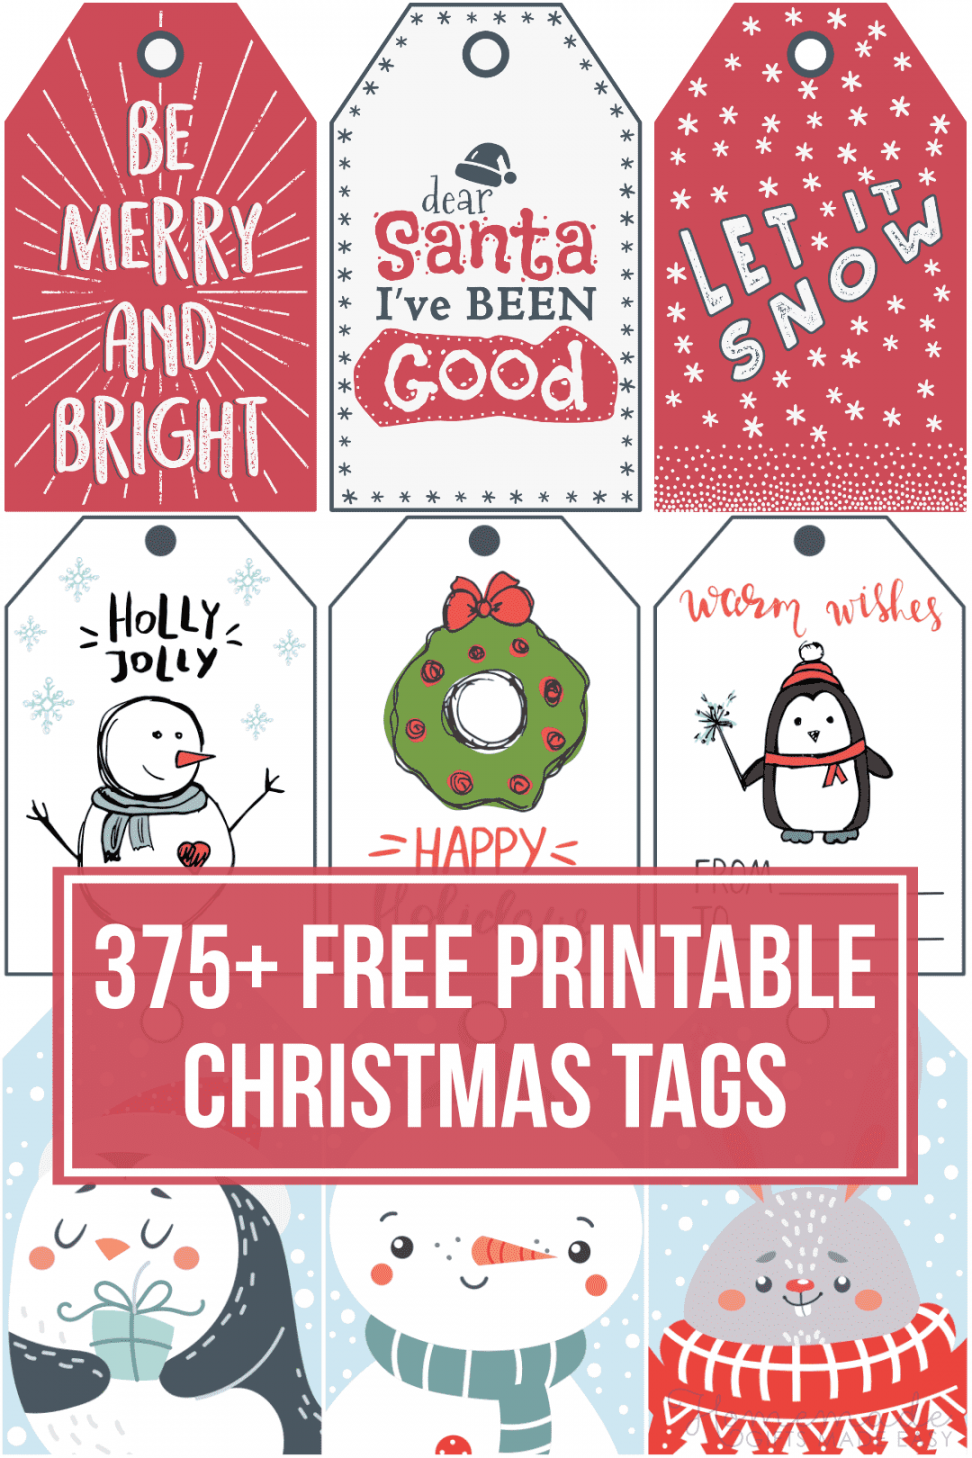 Free Printable Christmas Tag - Printable - + Free Printable Christmas Tags for your Holiday Gifts